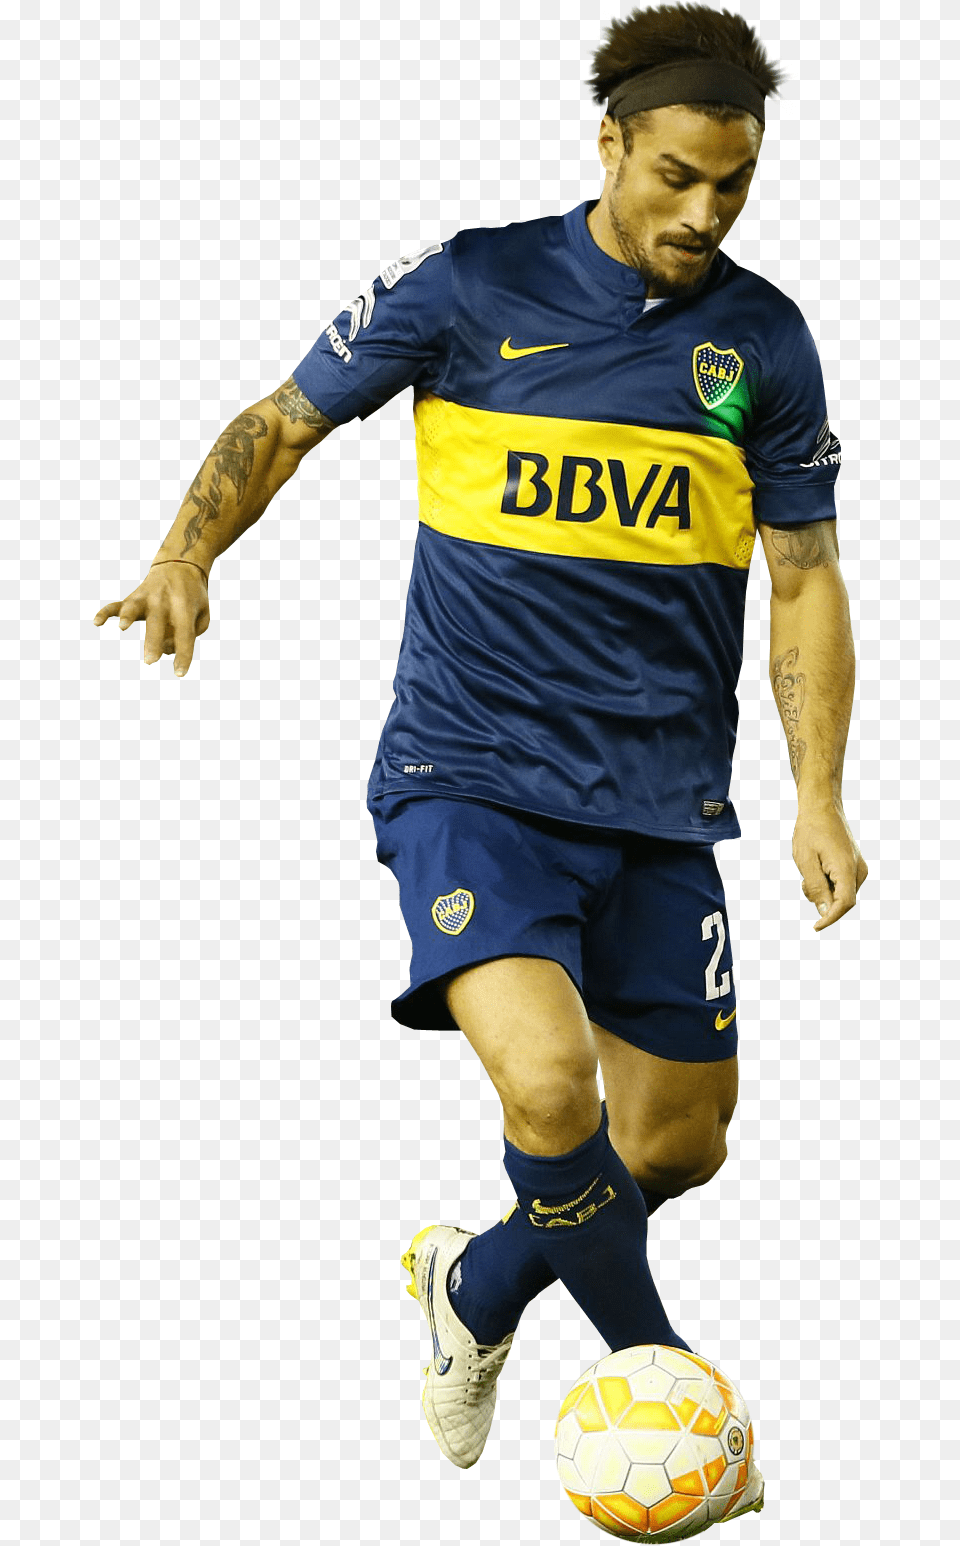 Pablo Osvaldo Render Renders Boca Junior 2017, Sphere, Ball, Soccer Ball, Soccer Free Png